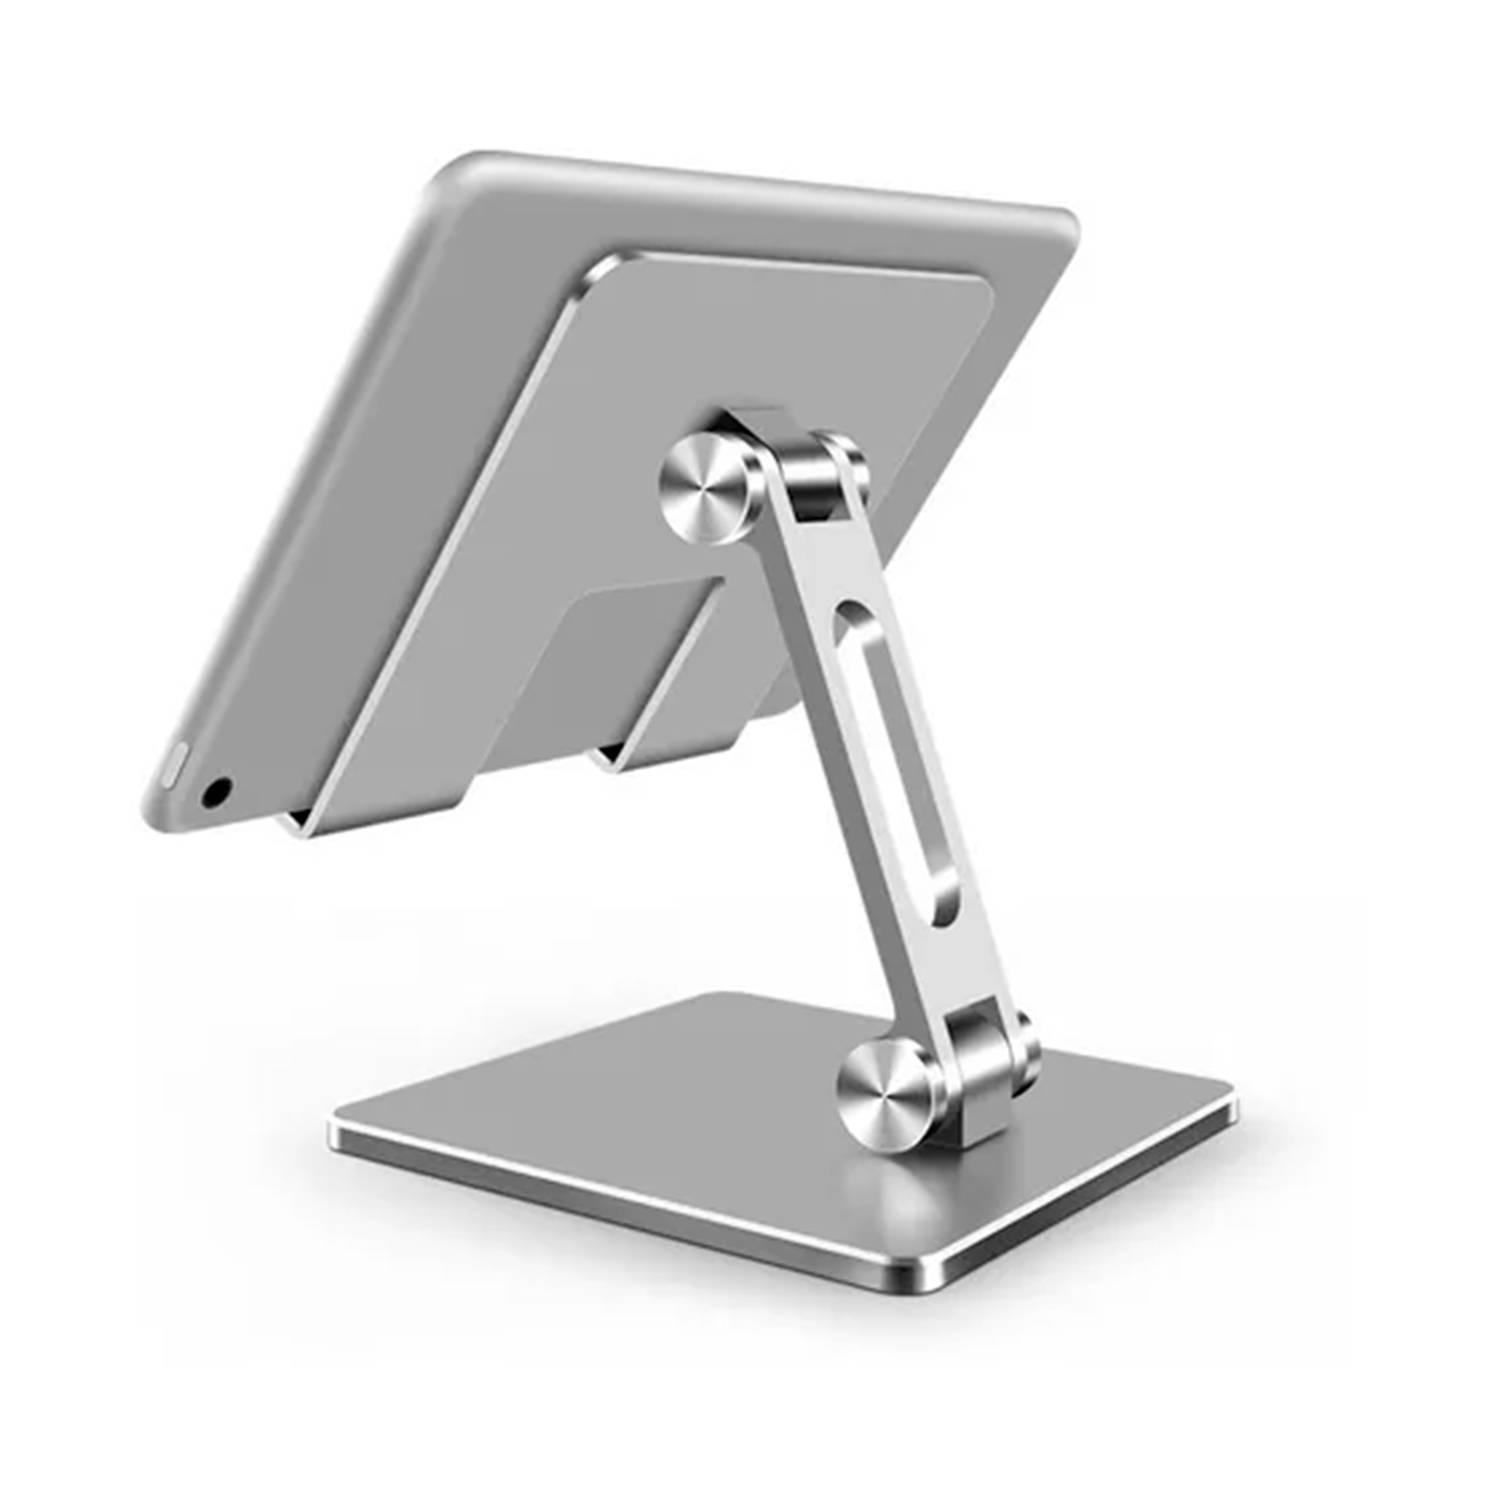 Soporte Tablet - iPad de aluminio ajustable